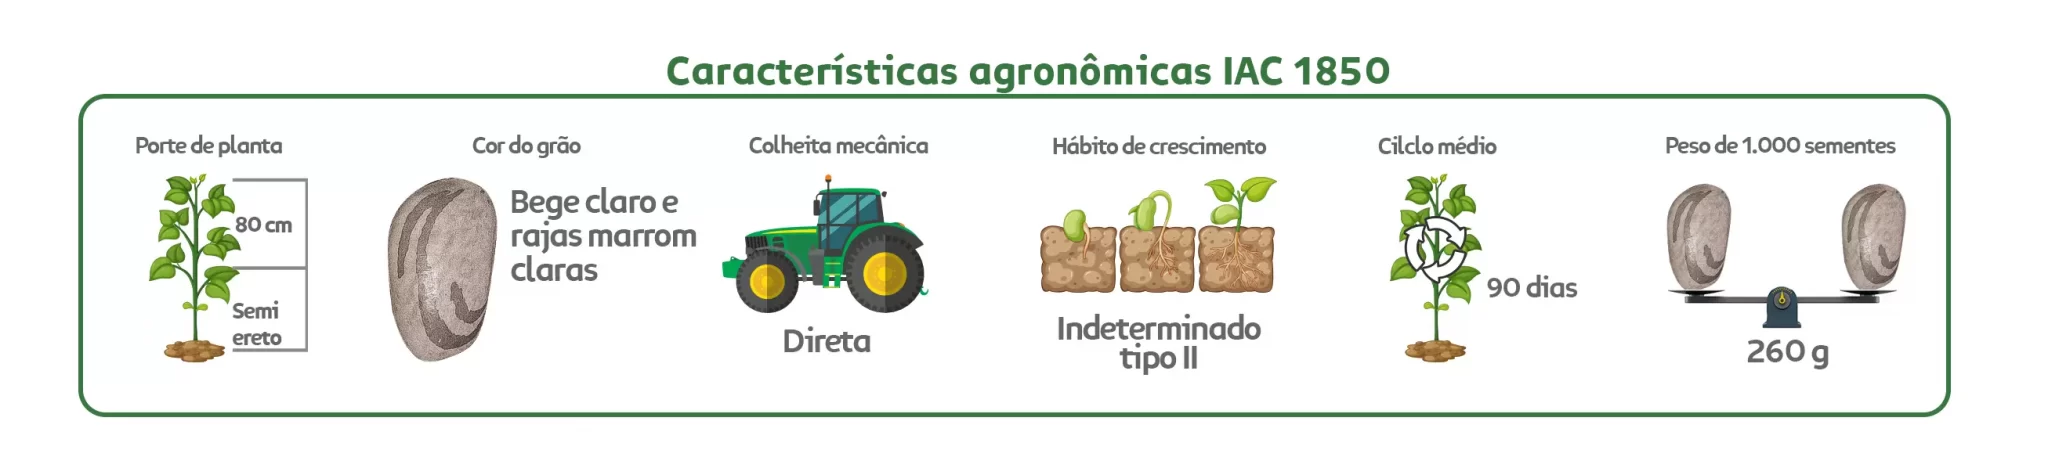 Características agronômicas Feijão IAC Carioca 1850